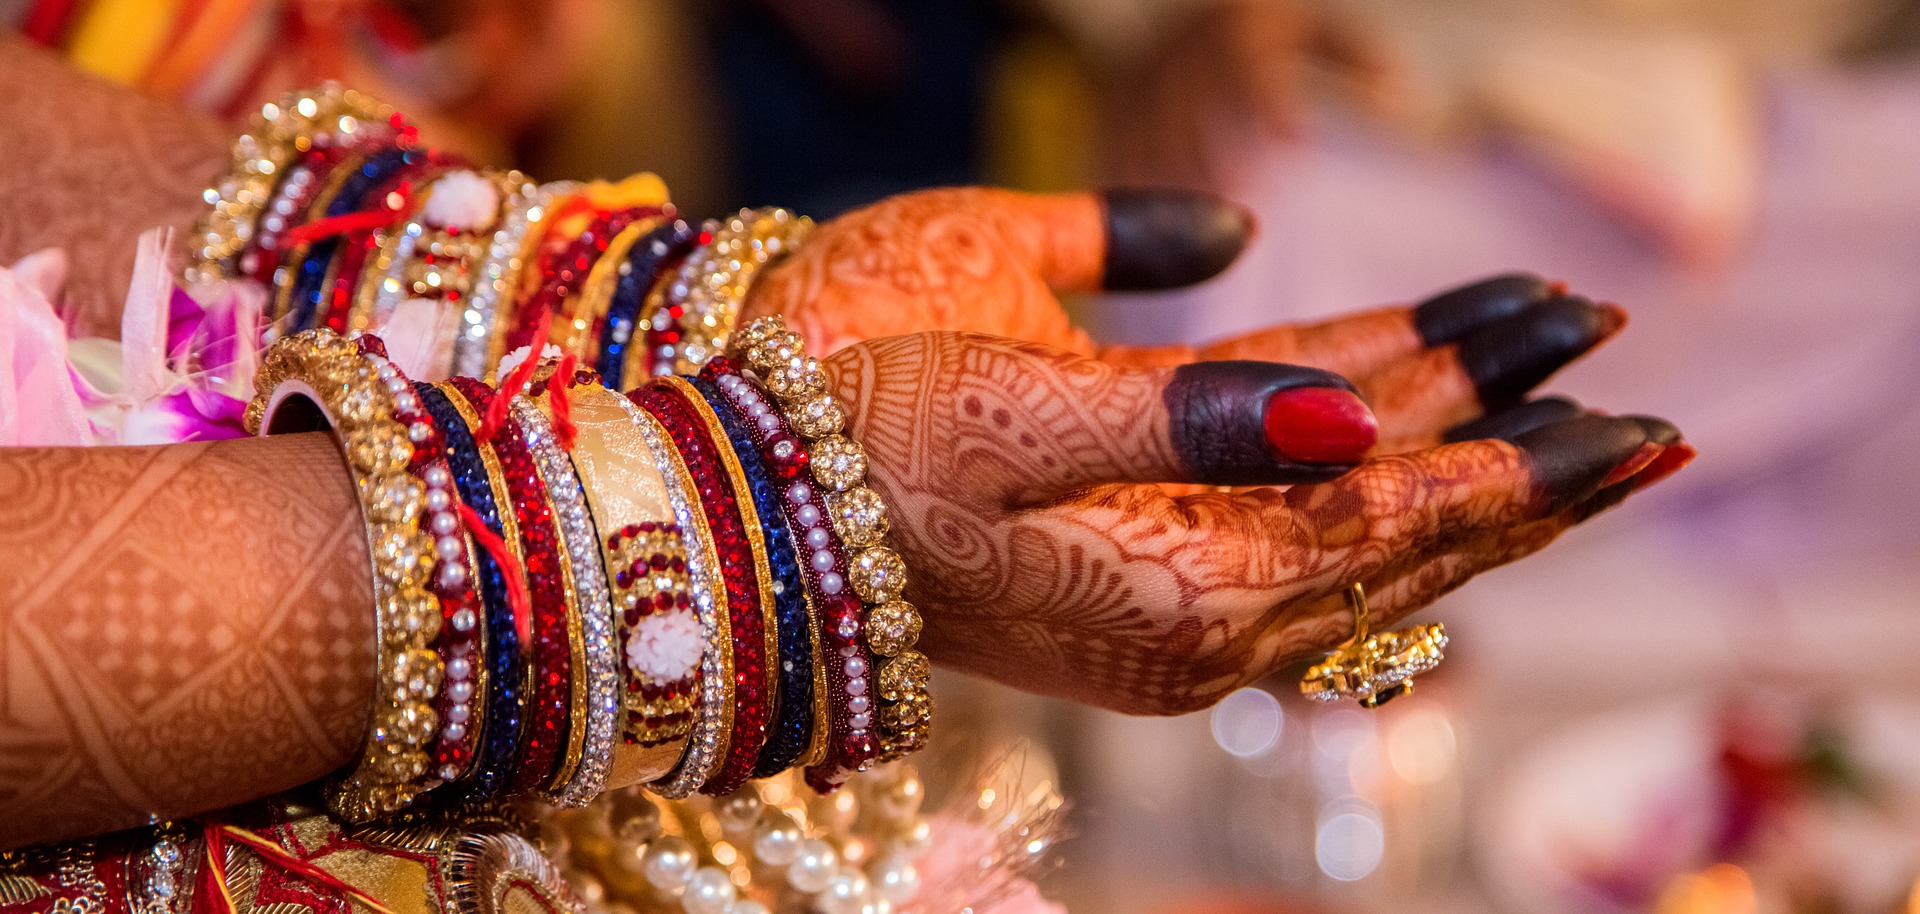 Dr. Prerna Kohli, India's Top Psychologist explains making arranged marriages work